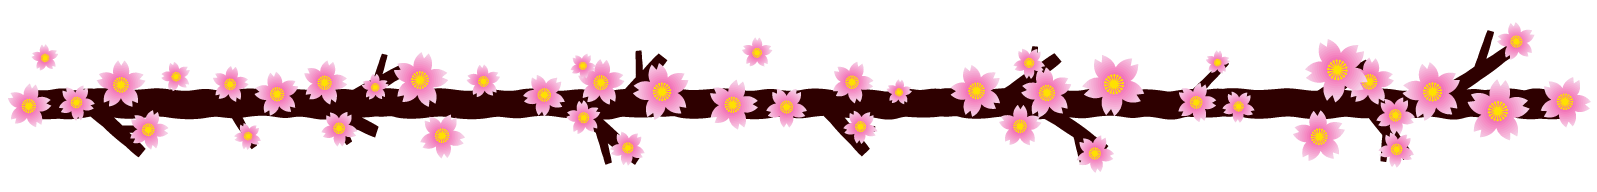 桜の花ライン・罫線イラスト/枝に咲いた桜